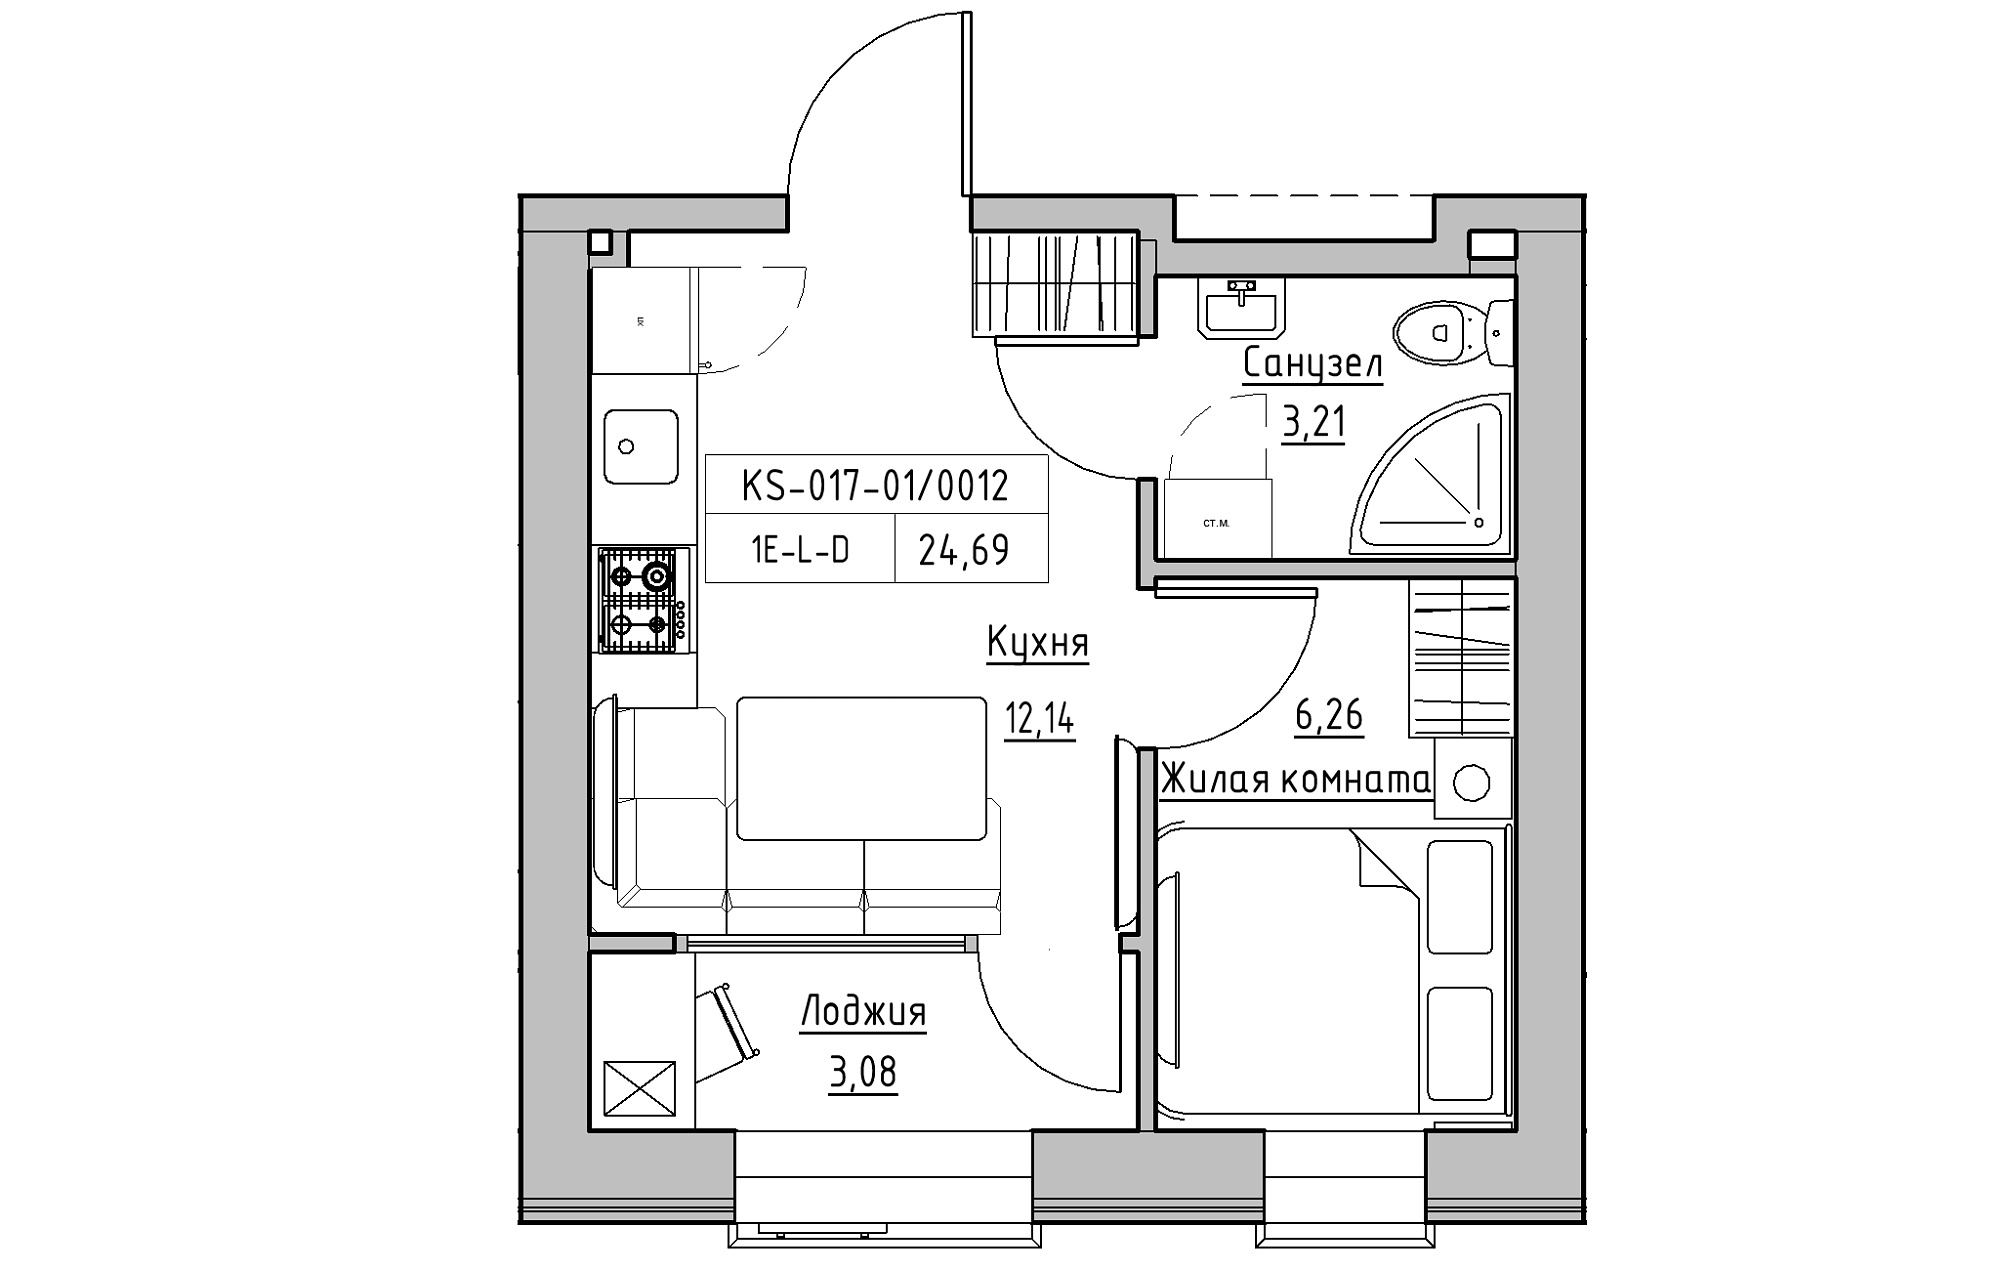 Планування 1-к квартира площею 24.69м2, KS-017-01/0012.